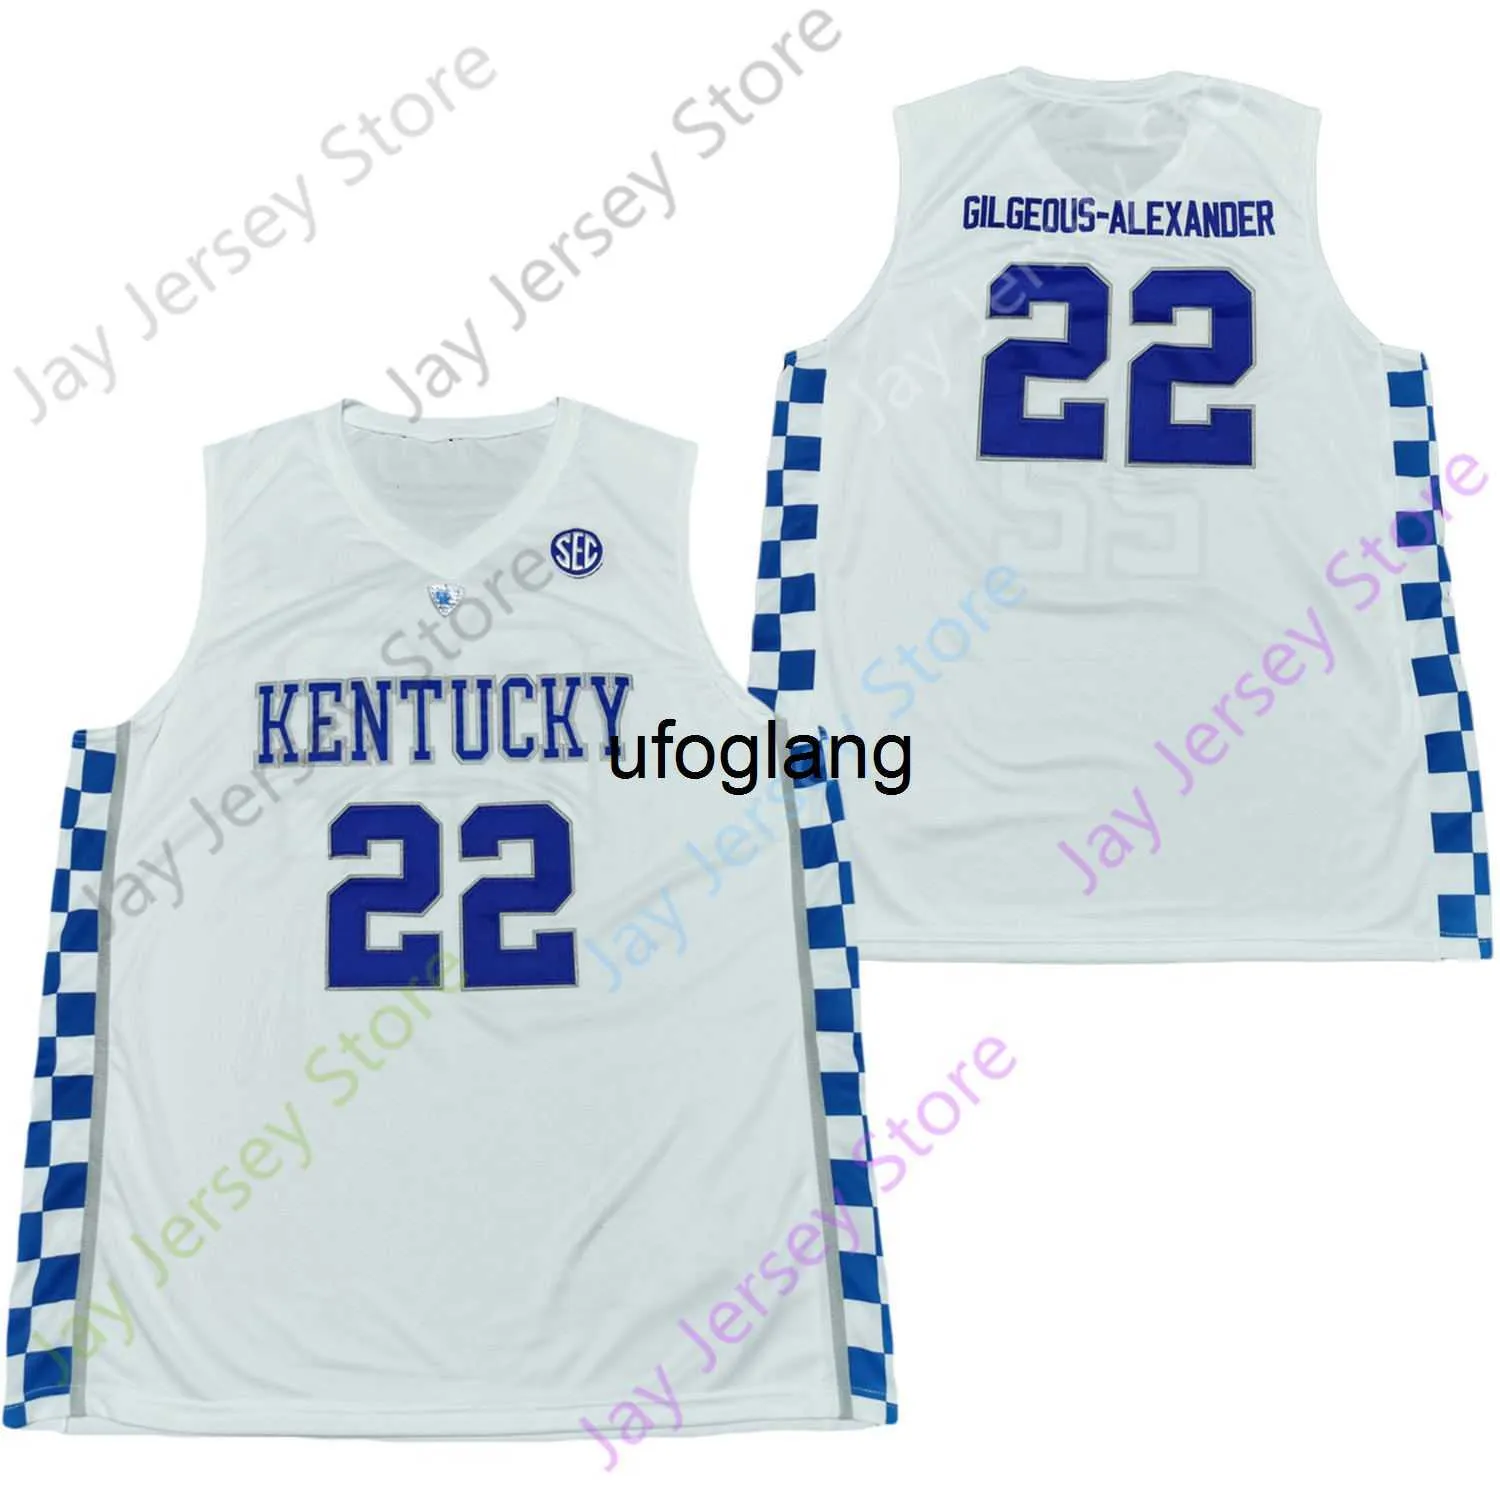 COE1 2020 NOWOŚĆ NCAA College Kentucky Wildcats Jerseys 22 Gilgeous-Alexander Basketball Jersey Size Młodzież dorosły All Szygowany